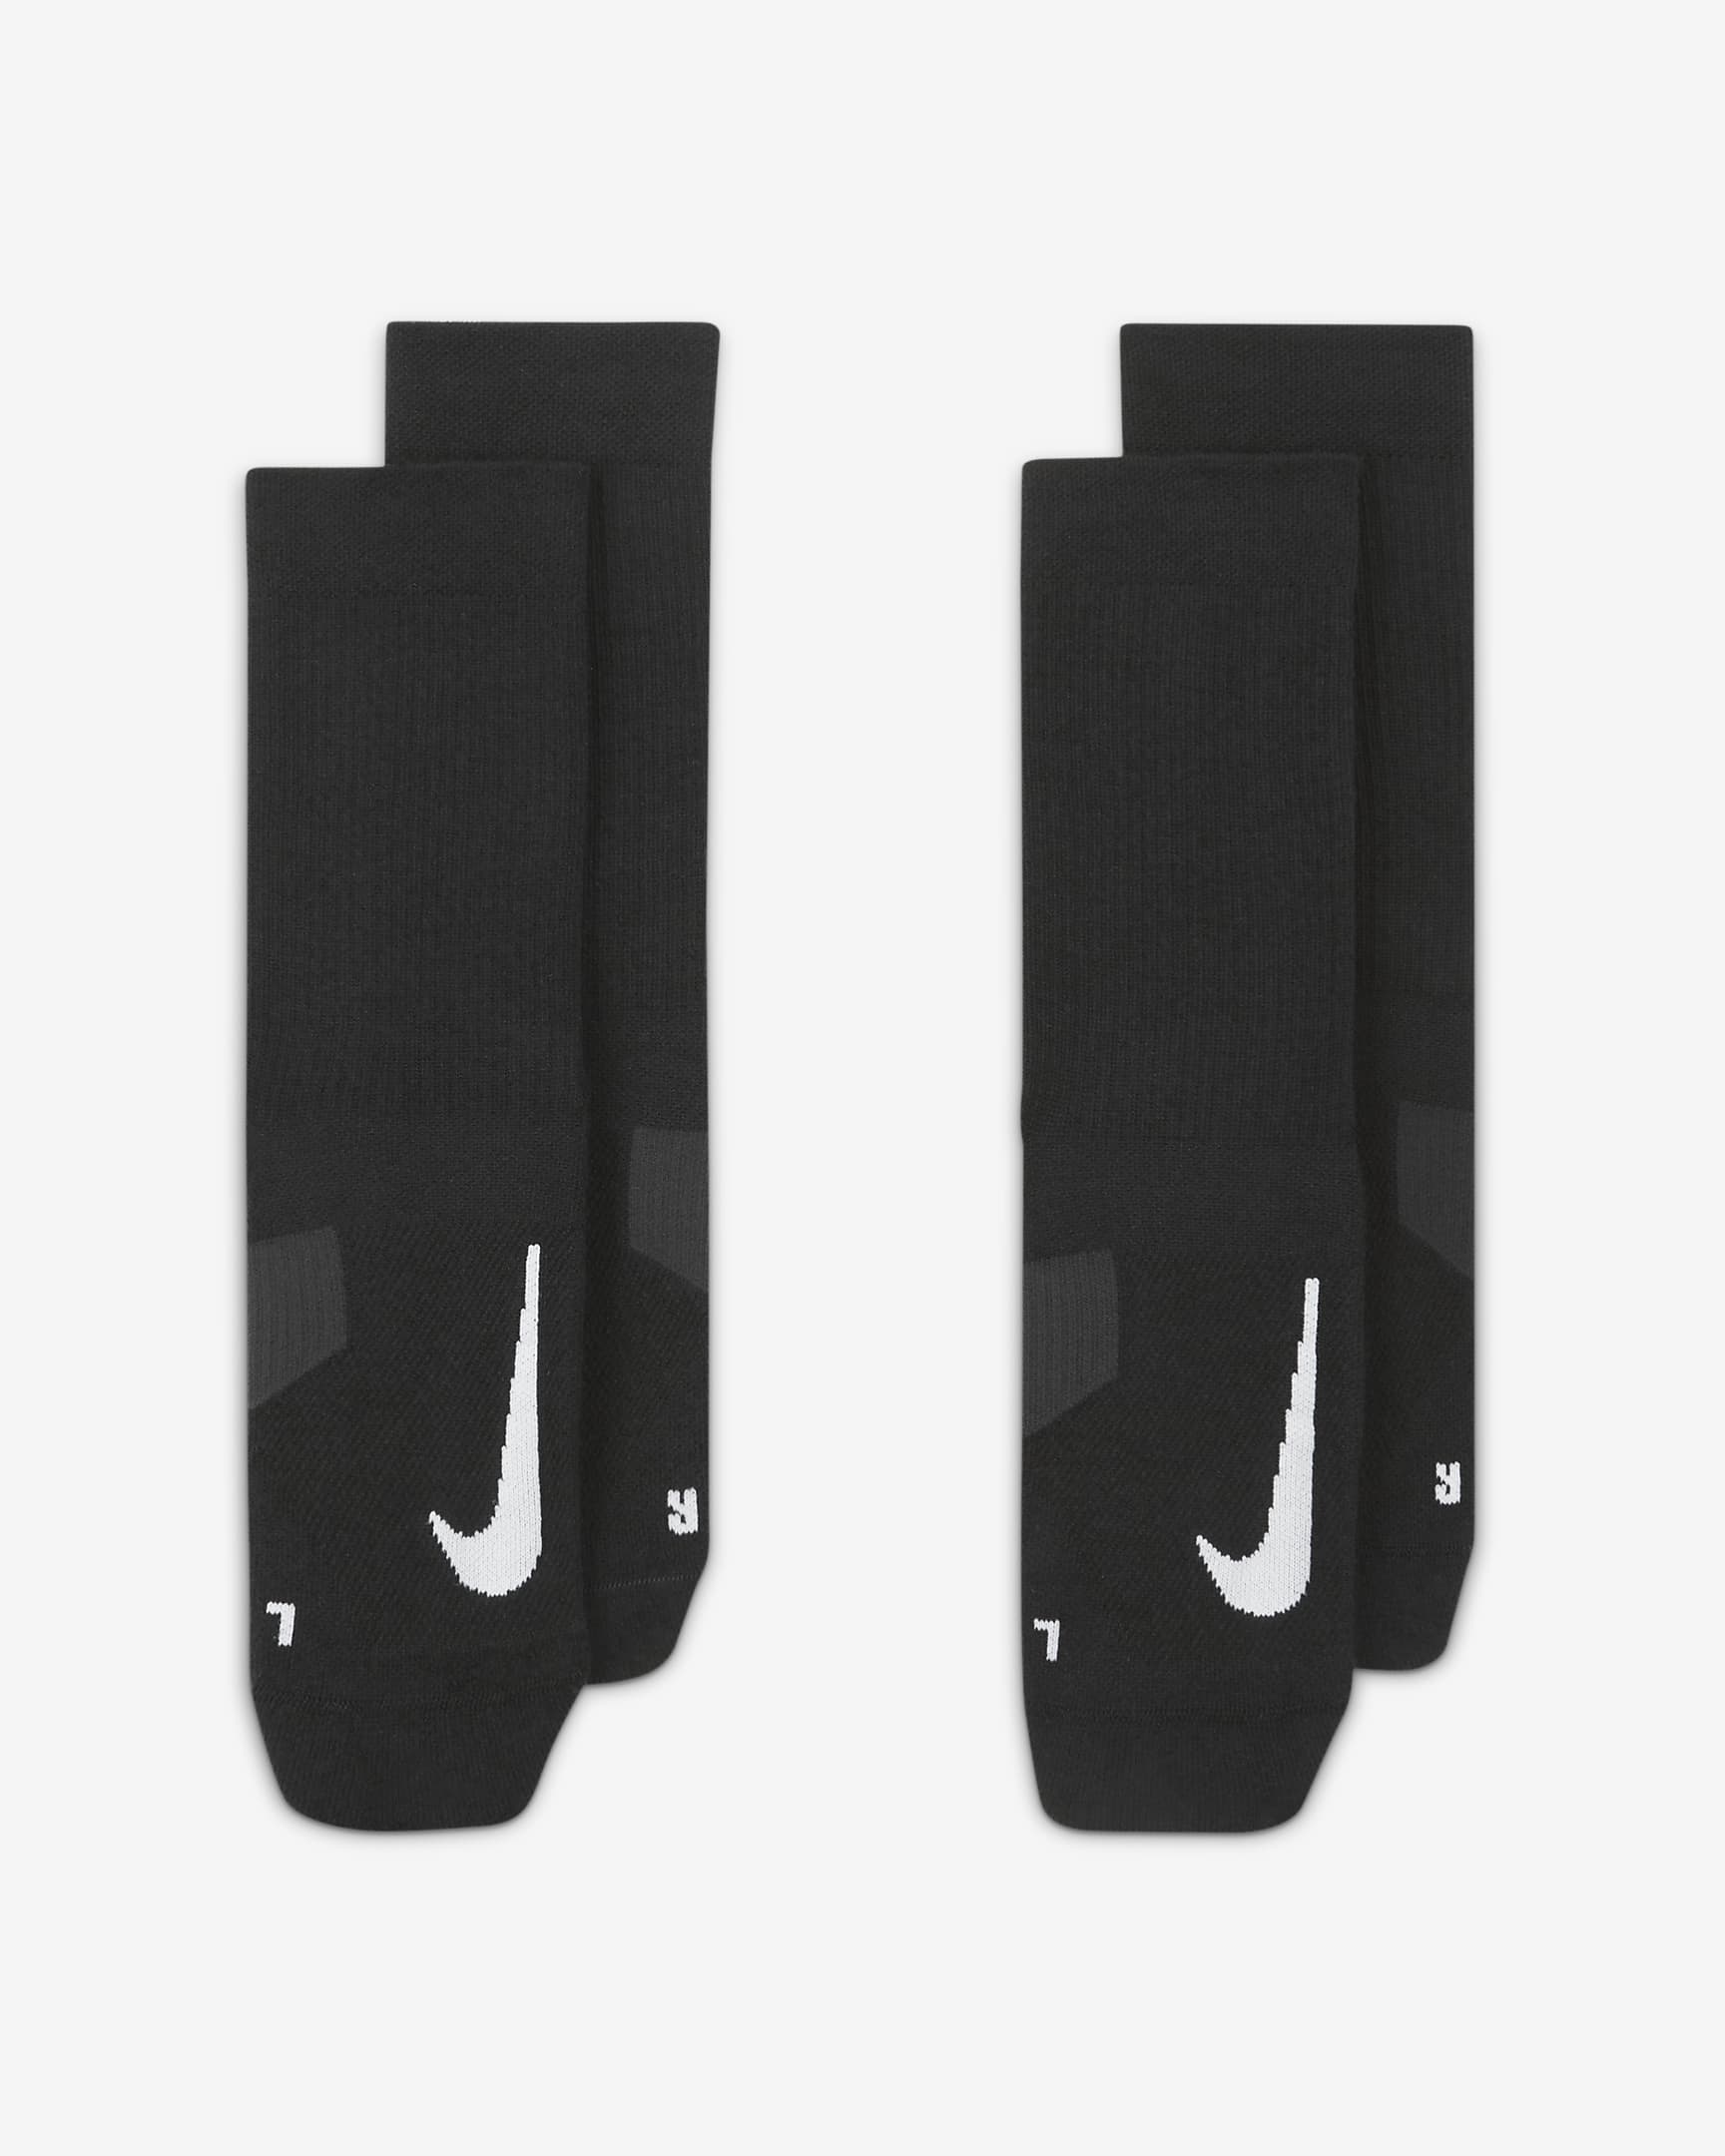 Chaussettes mi-mollet Nike Multiplier (2 paires) - Noir/Blanc